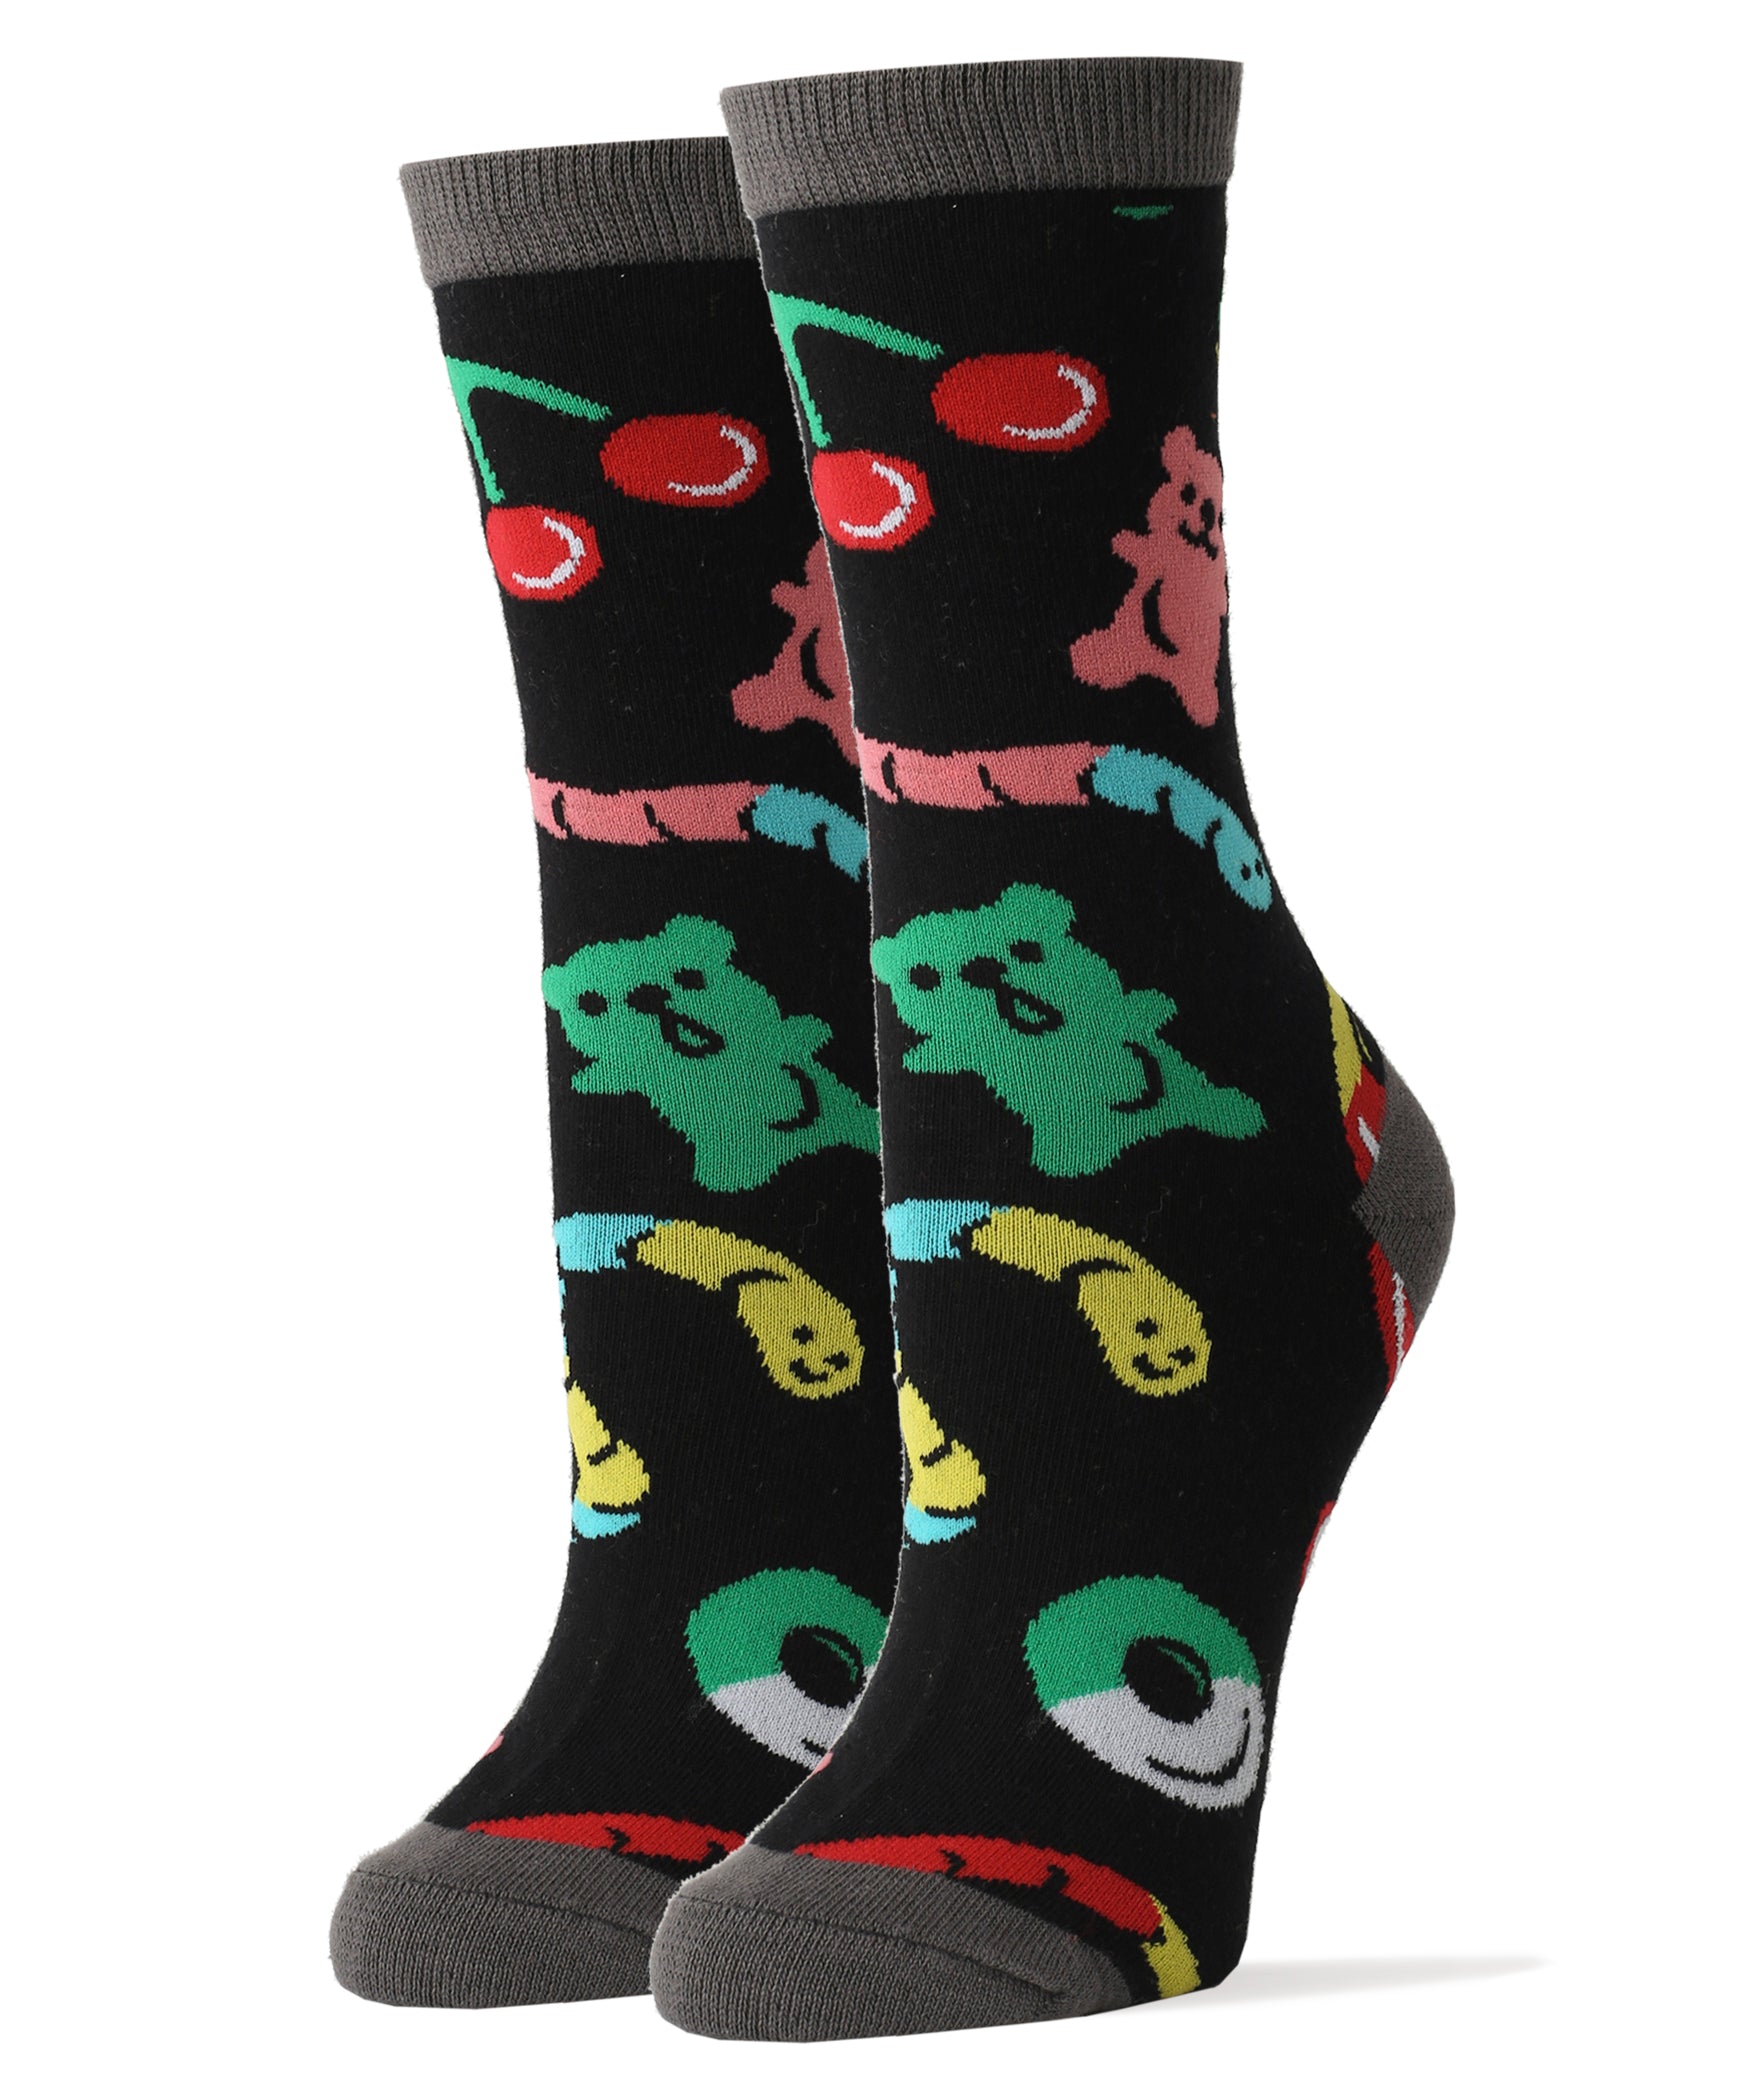 Gummies Socks | Novelty Crew Socks For Women